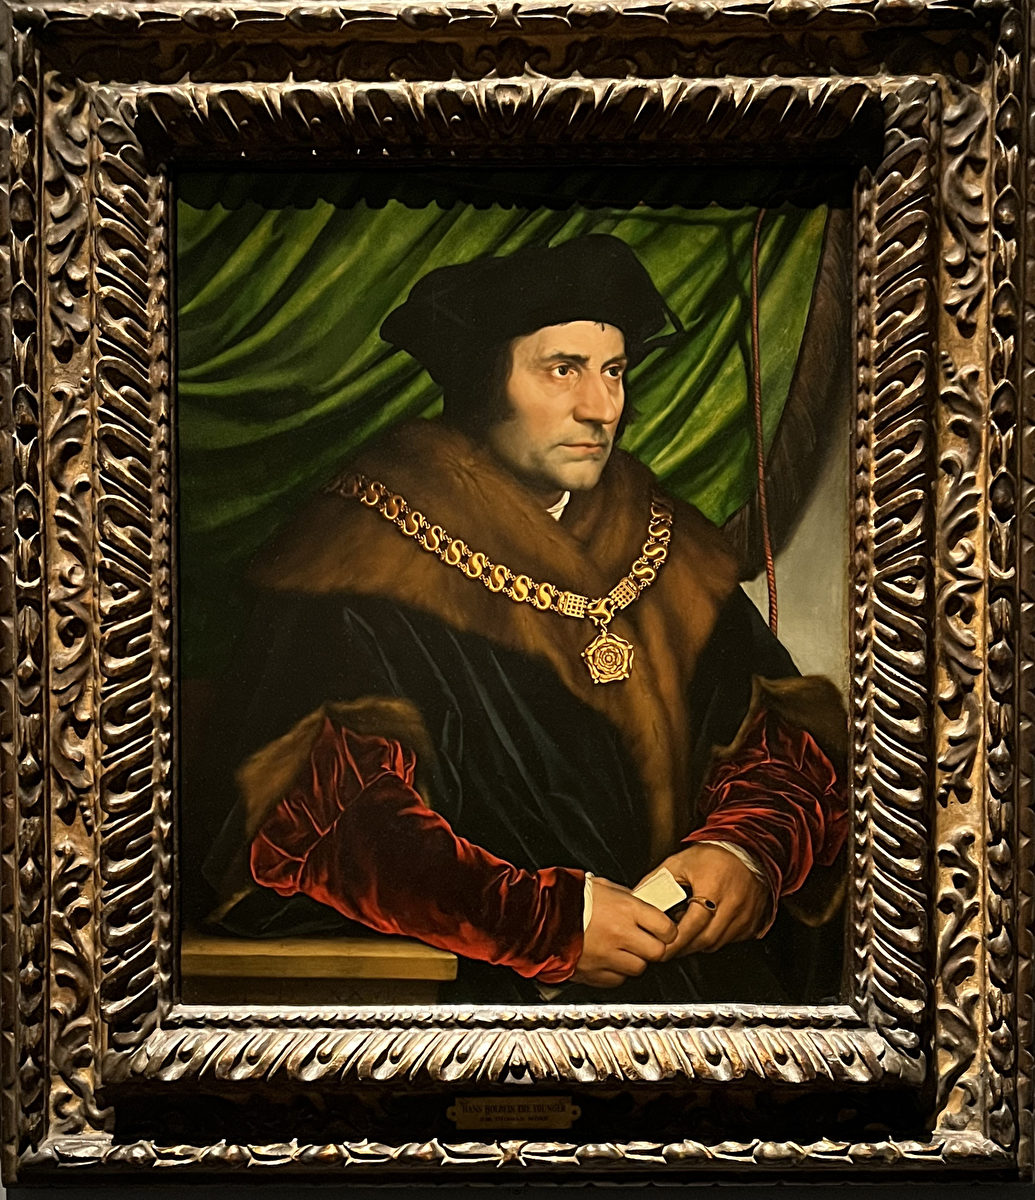 Hình 10: Chân dung Thomas More, tác phẩm của Hans Holbein the Younger. (Ảnh do Wei J C cung cấp)